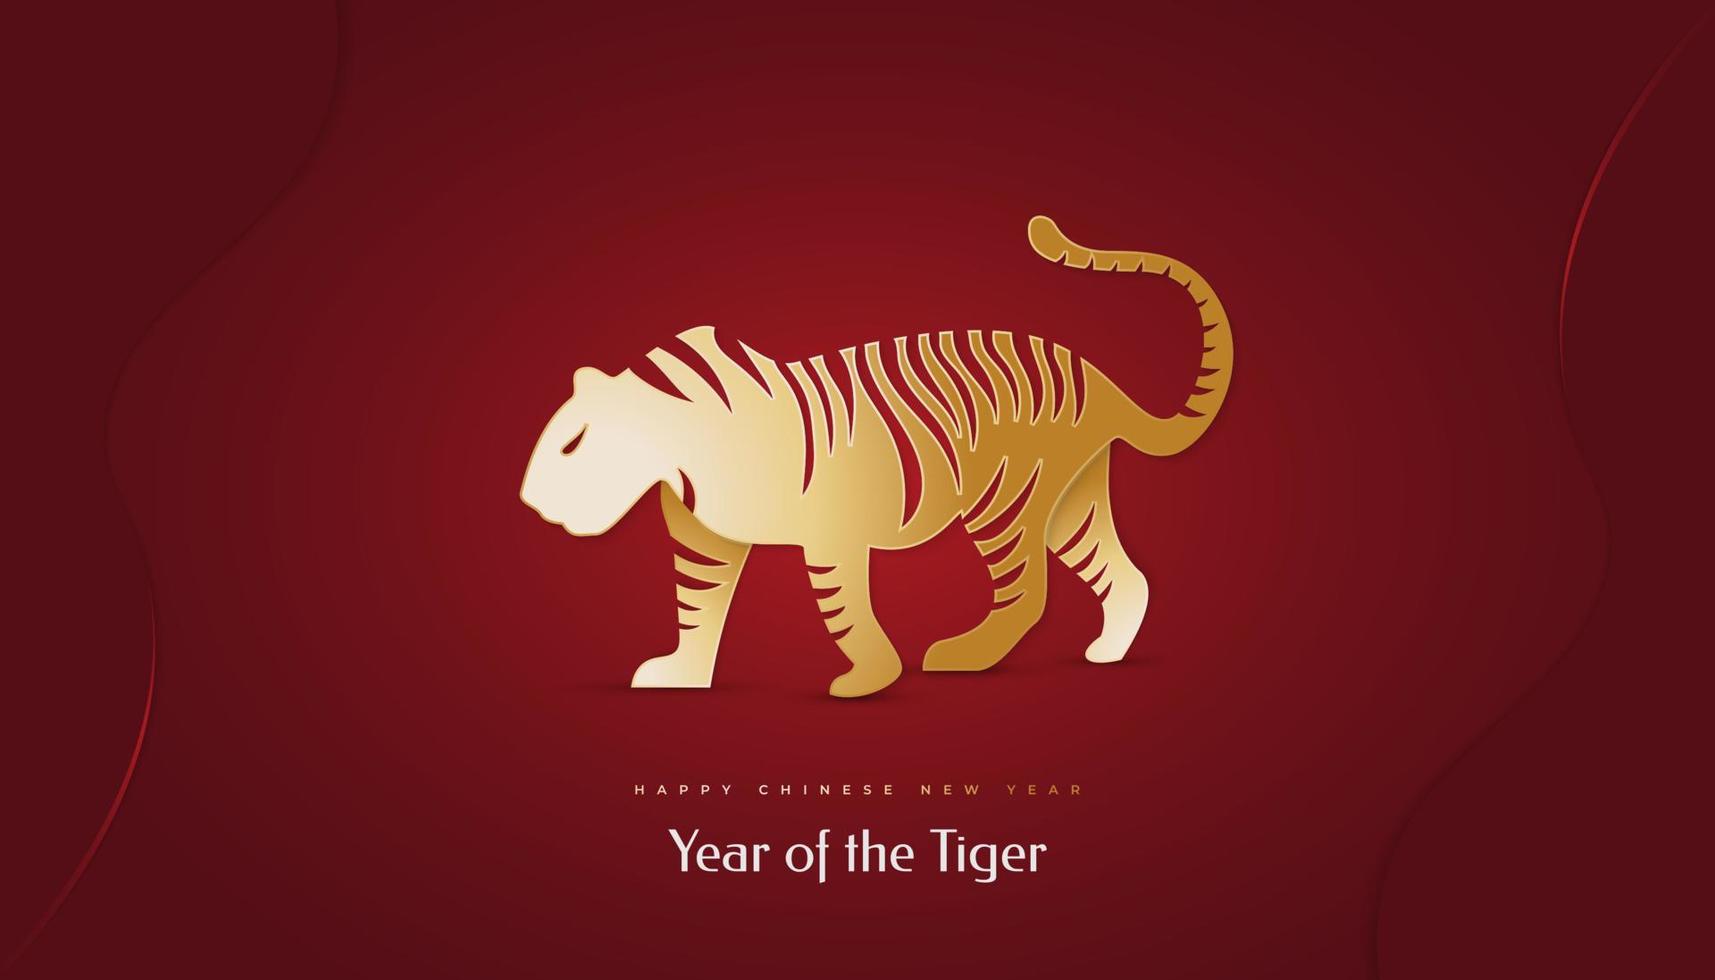 nouvel an chinois 2022 année du tigre. bannière du nouvel an chinois avec illustration de tigre doré isolée sur fond rouge. 2022 signe du zodiaque chinois tigre vecteur